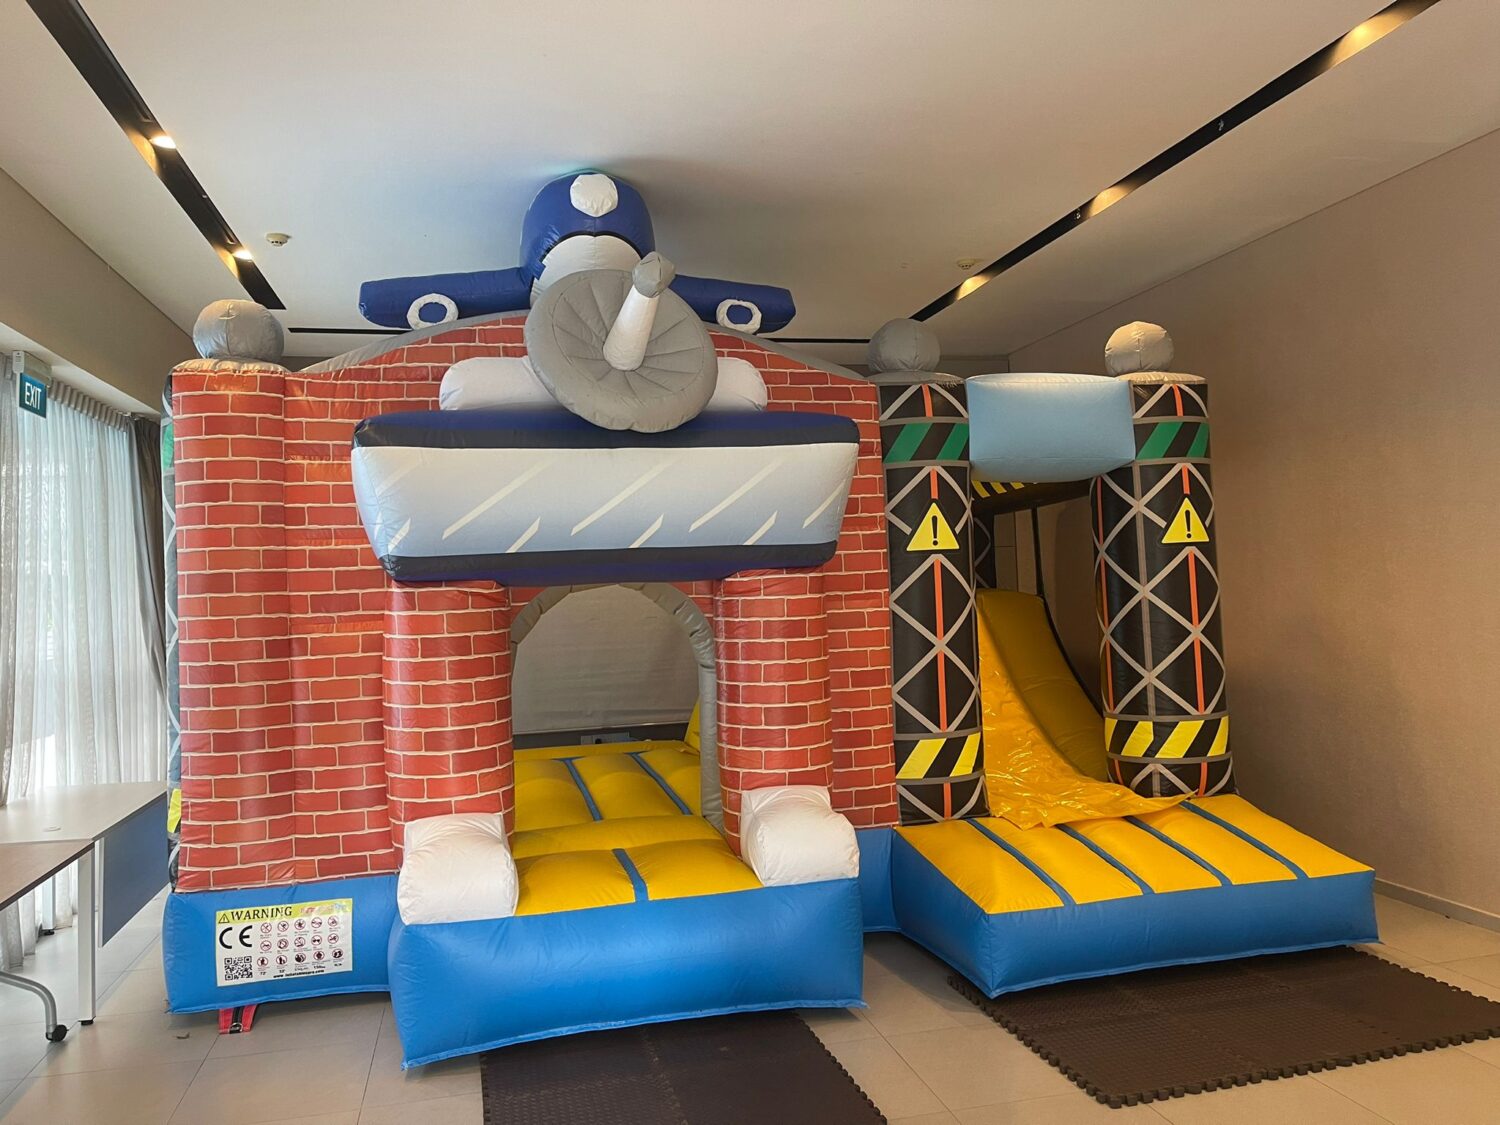 Airplane bouncy castle rental